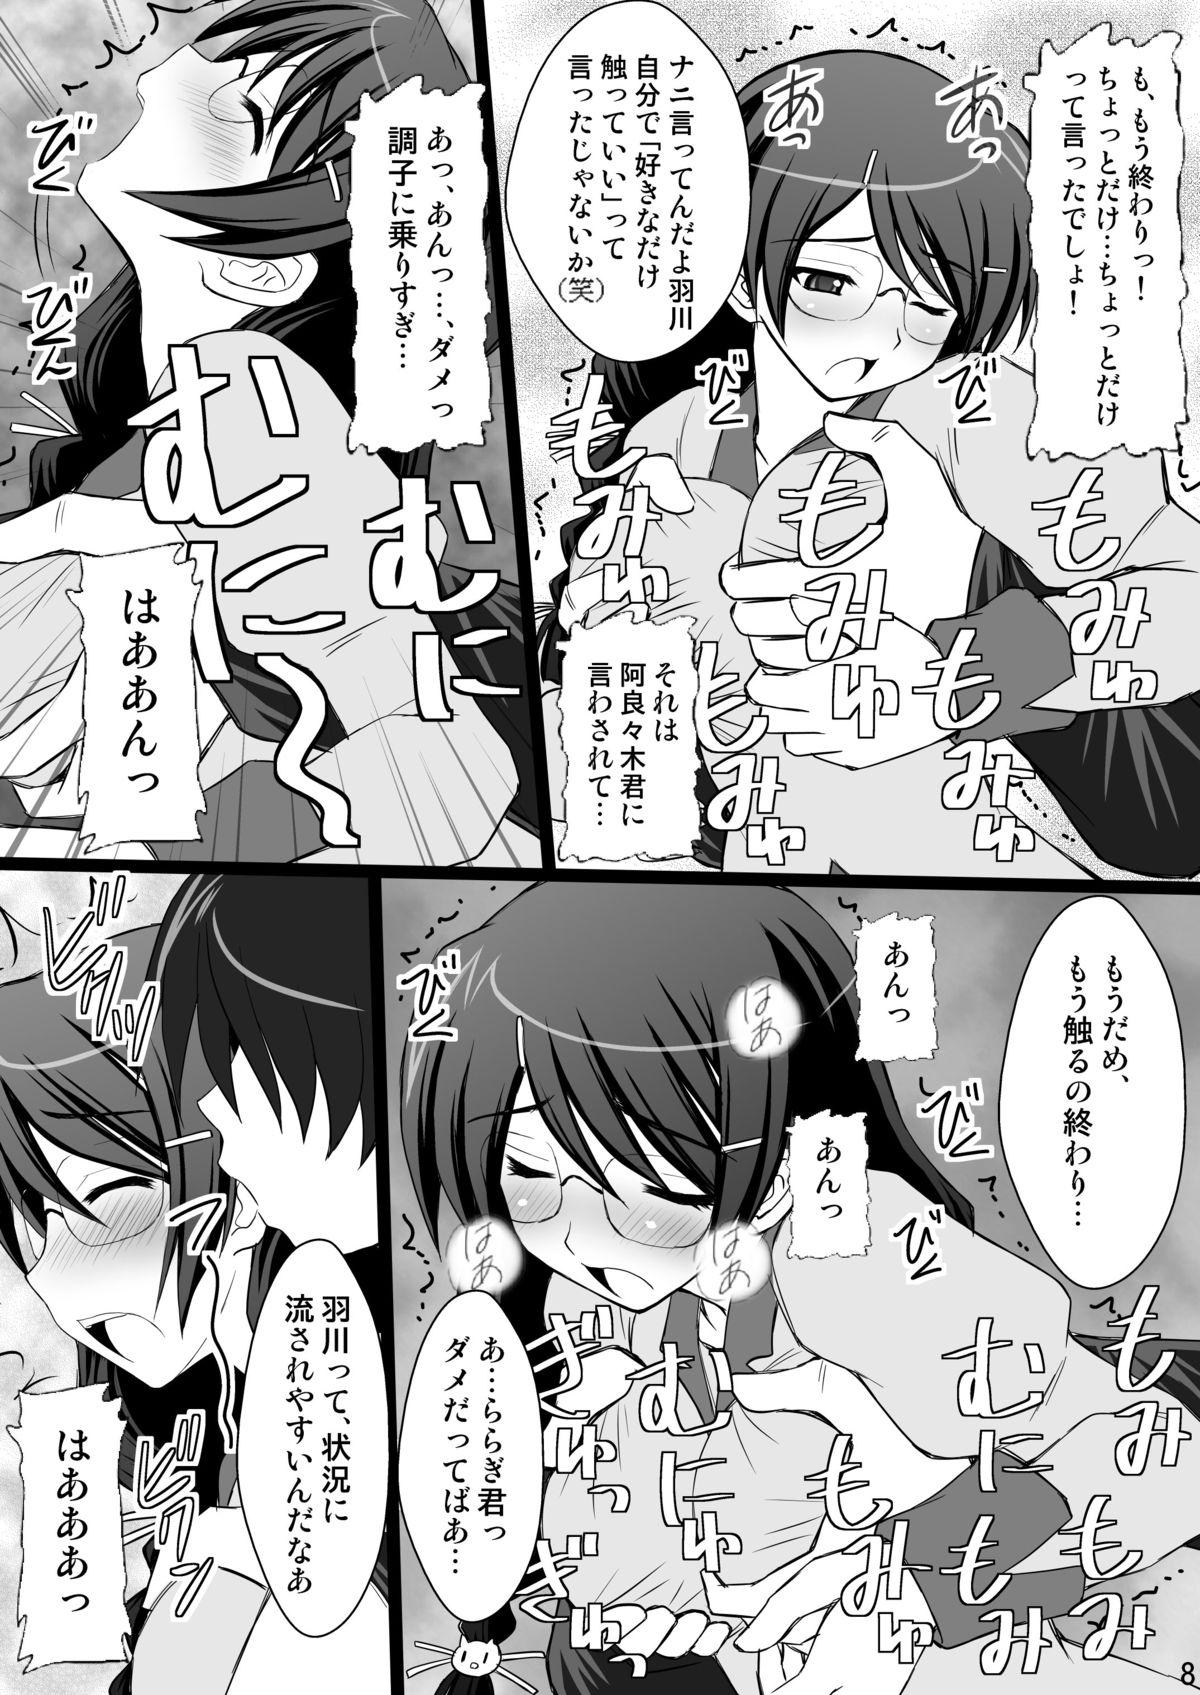 Ejaculations Koyomi Paradise - Bakemonogatari 4some - Page 8